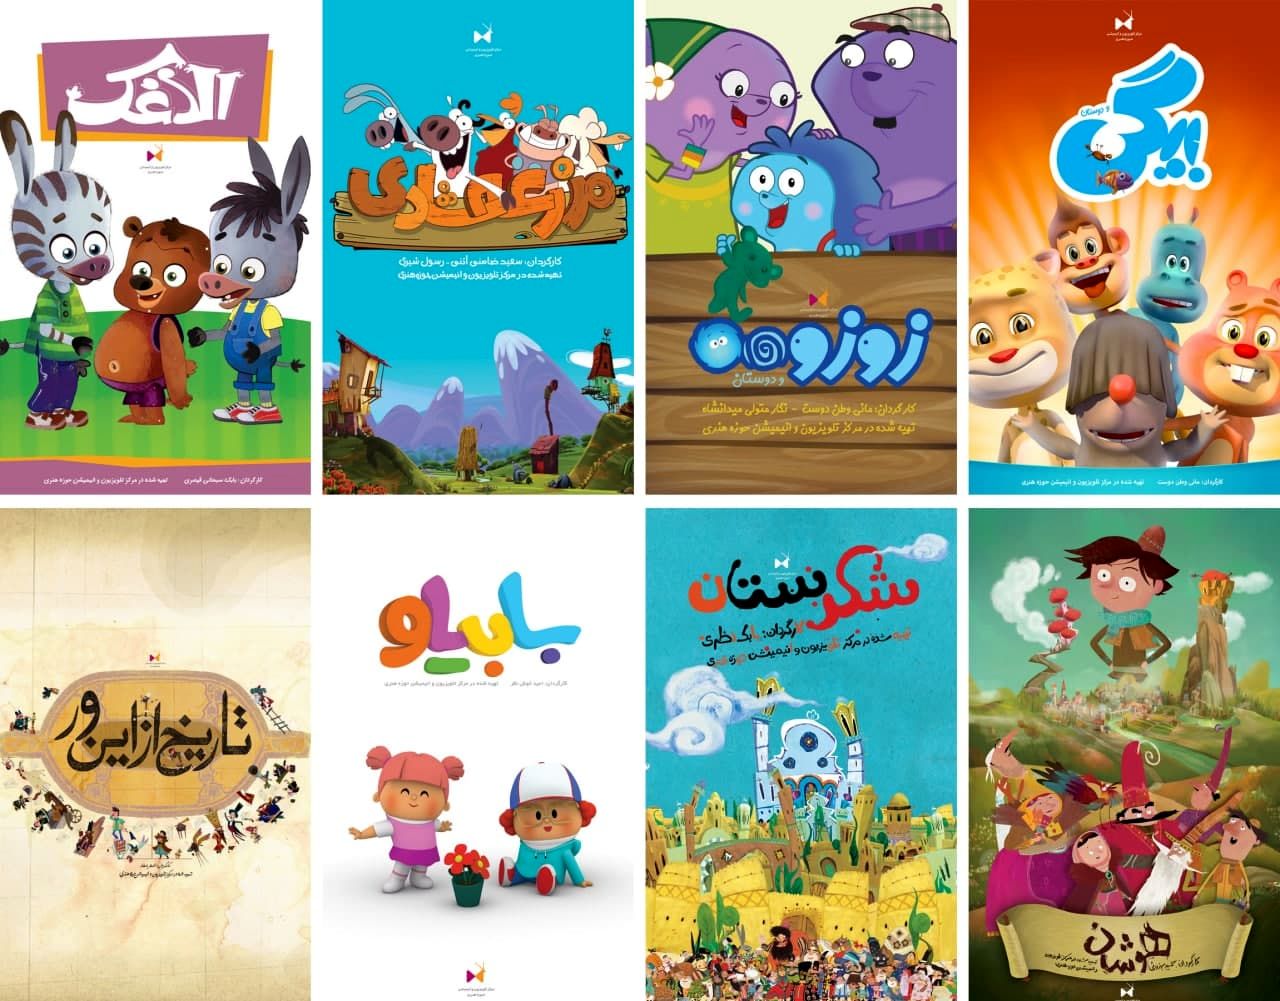 سریال های انیمیشنی جدید حوزه هنری در پلتفرم‌های آنلاین عرضه می شوند